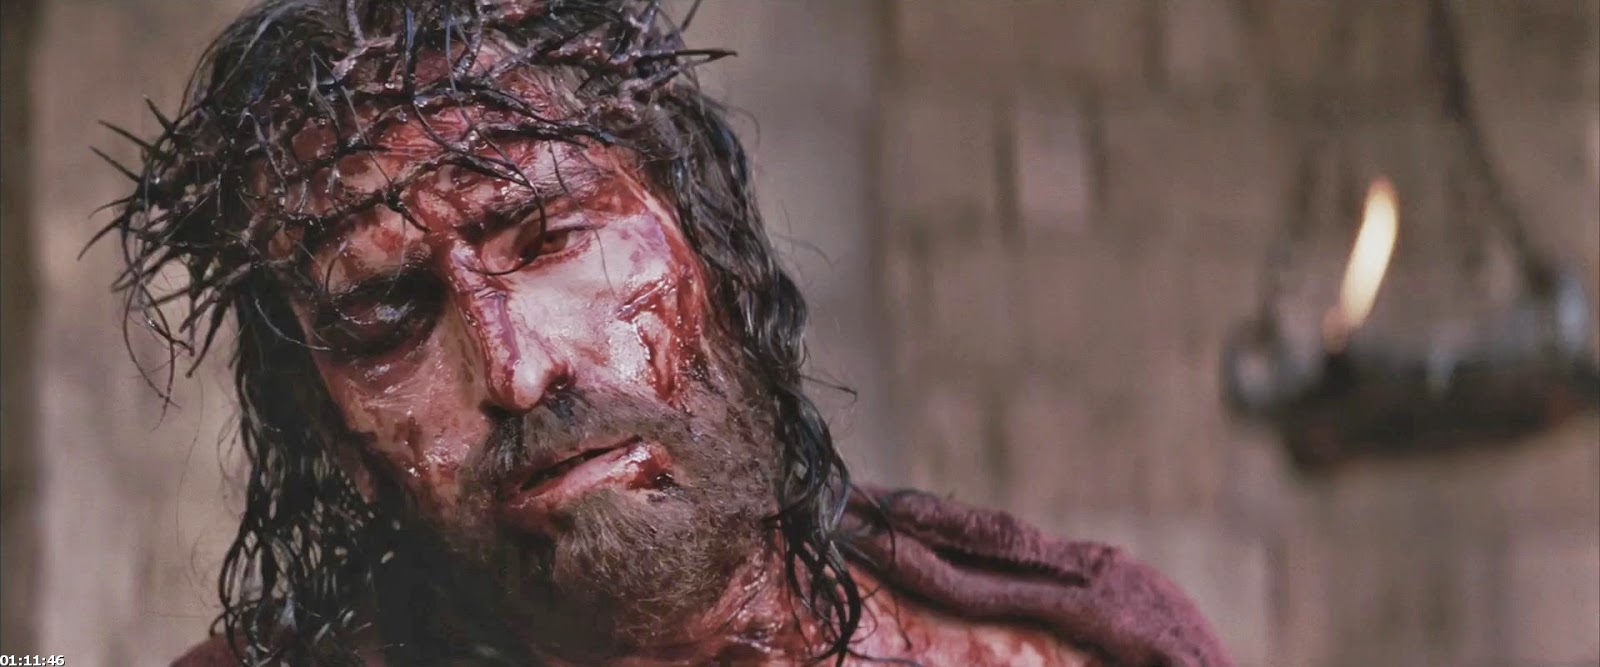 Ver Pelicula La Pasion De Cristo En Espanol Latino De Mel Gibson